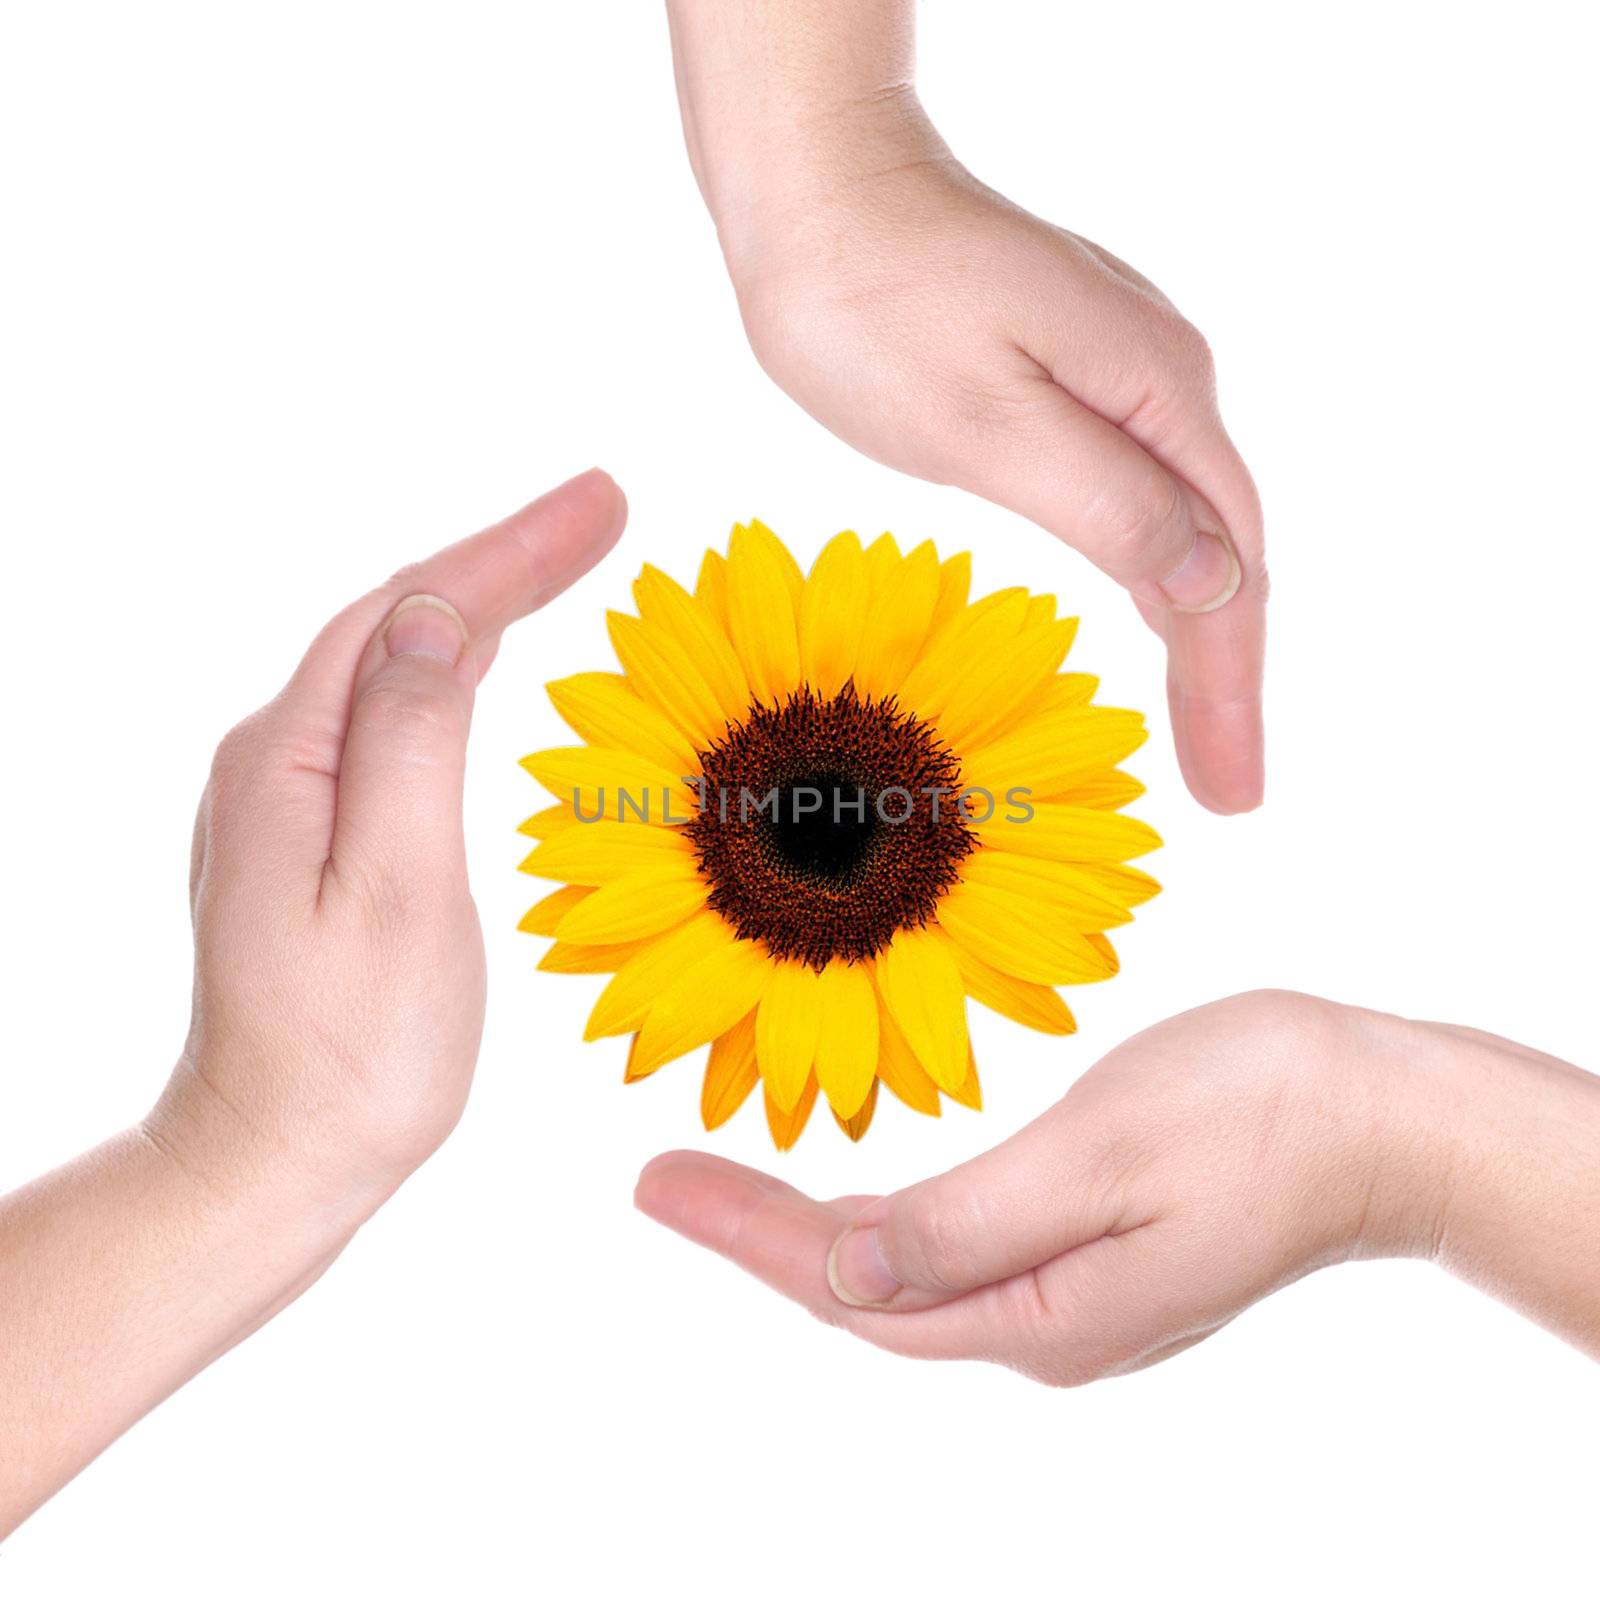 Sunflower by petrkurgan